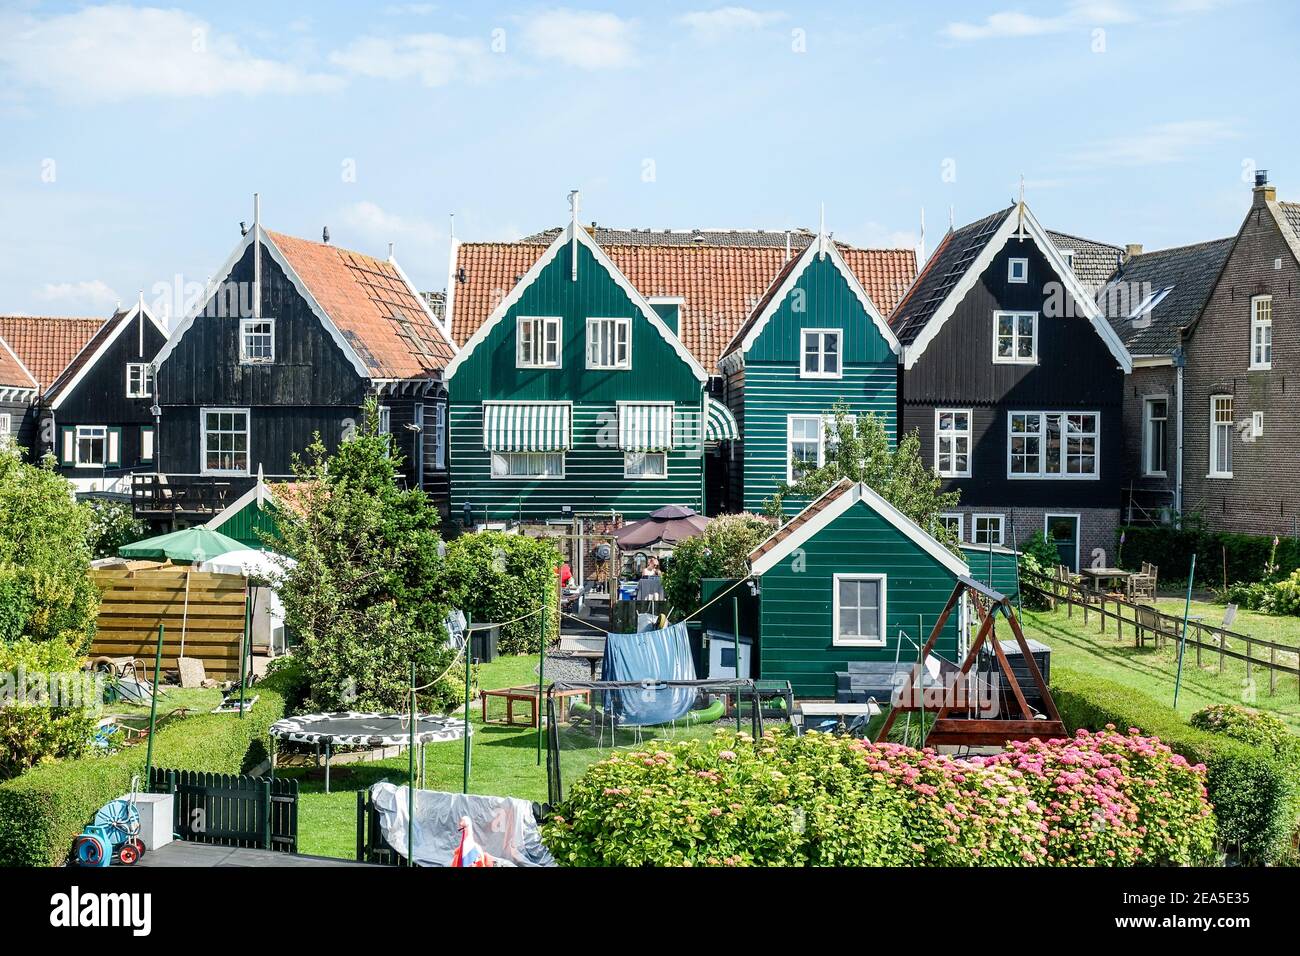 Typisch holländische Häuser im malerischen Dorf und Hafen von Marken, Nordholland, Niederlande Stockfoto